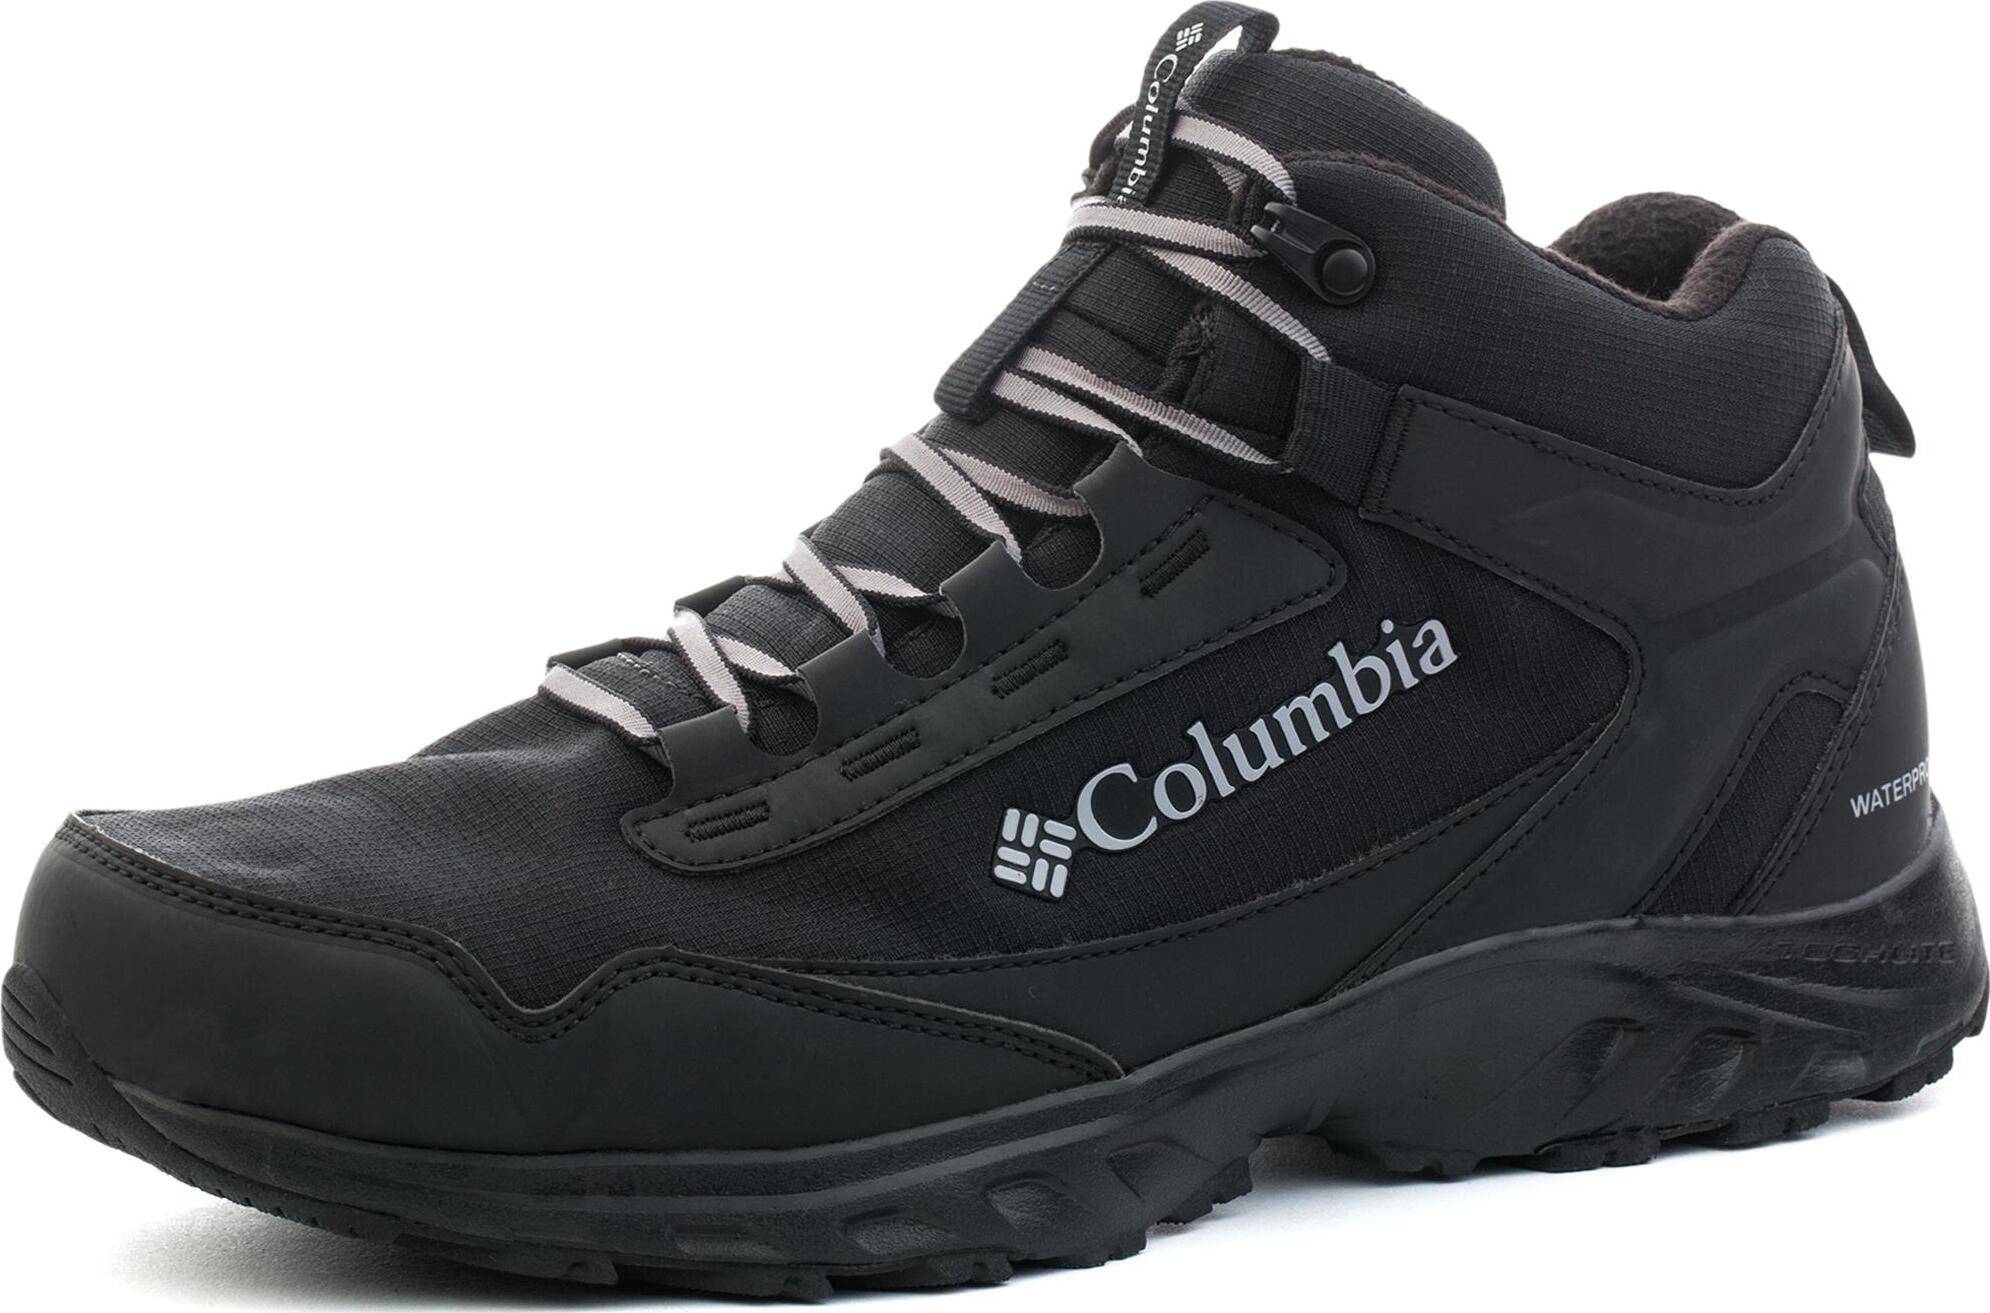 Одежда обувь купить мужские. Обувь коламбия мужские зимние кроссовки. Ботинки Columbia 1865611. Columbia Irrigon Trail. Ботинки зимние коламбия мужские 2021.